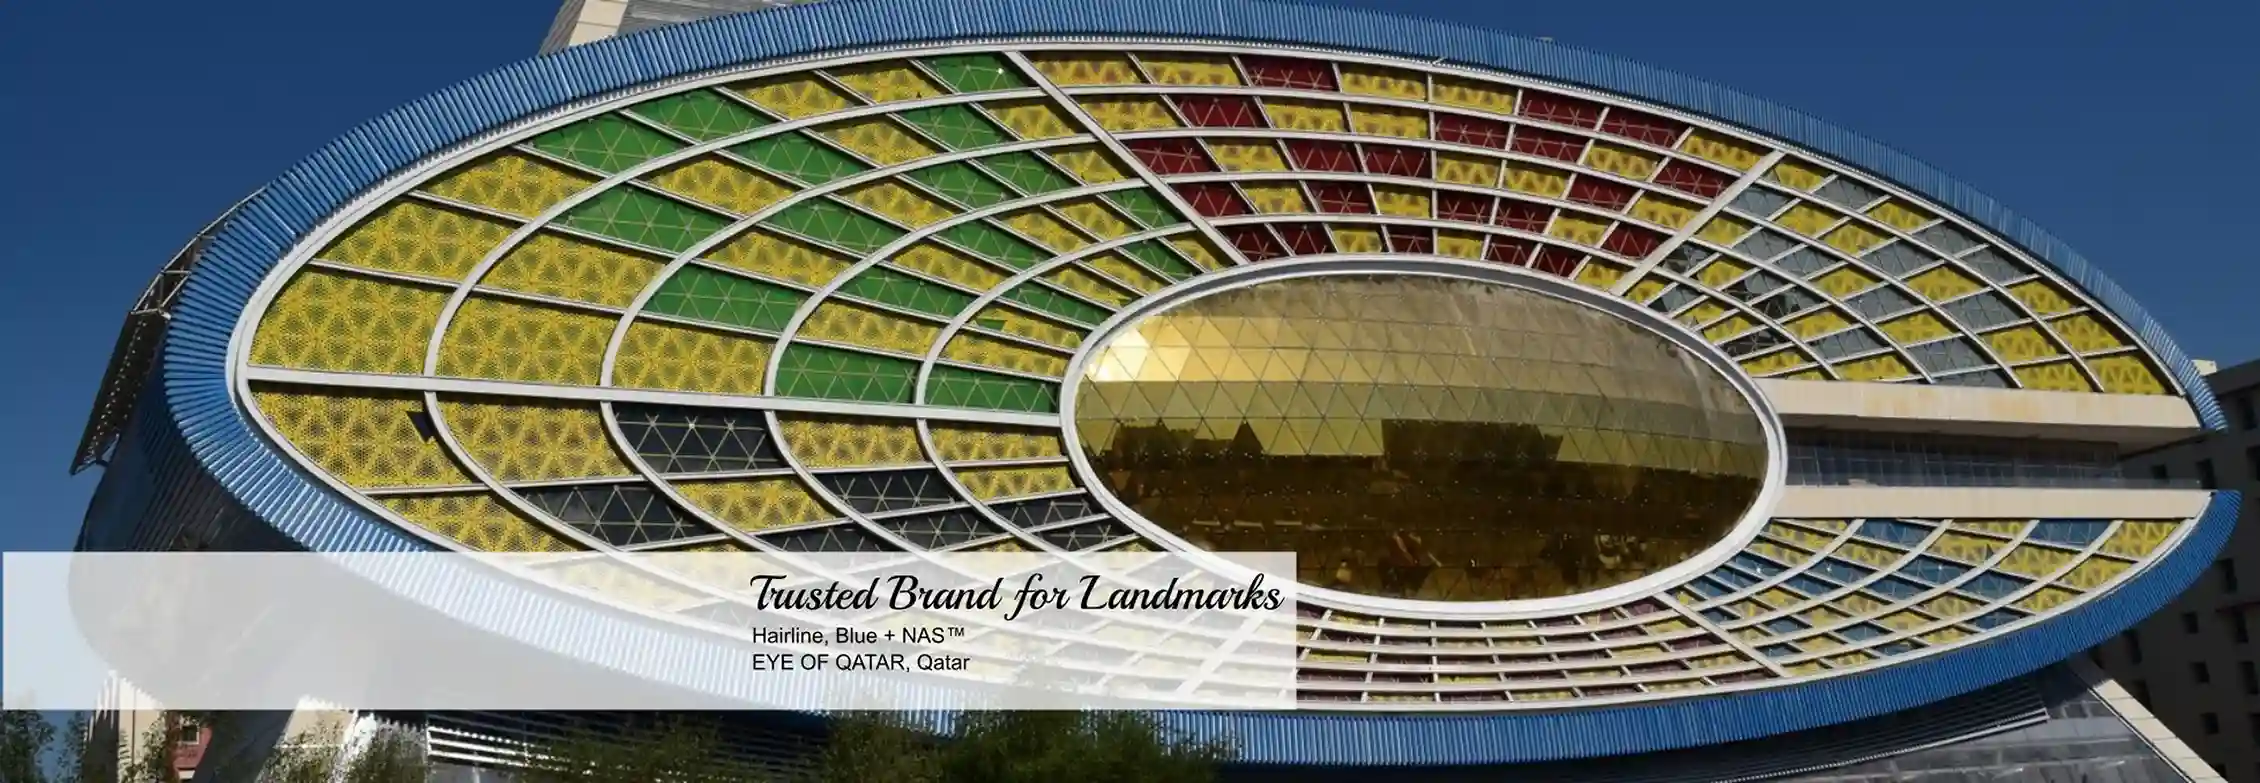 trusted brand for landmarks slide